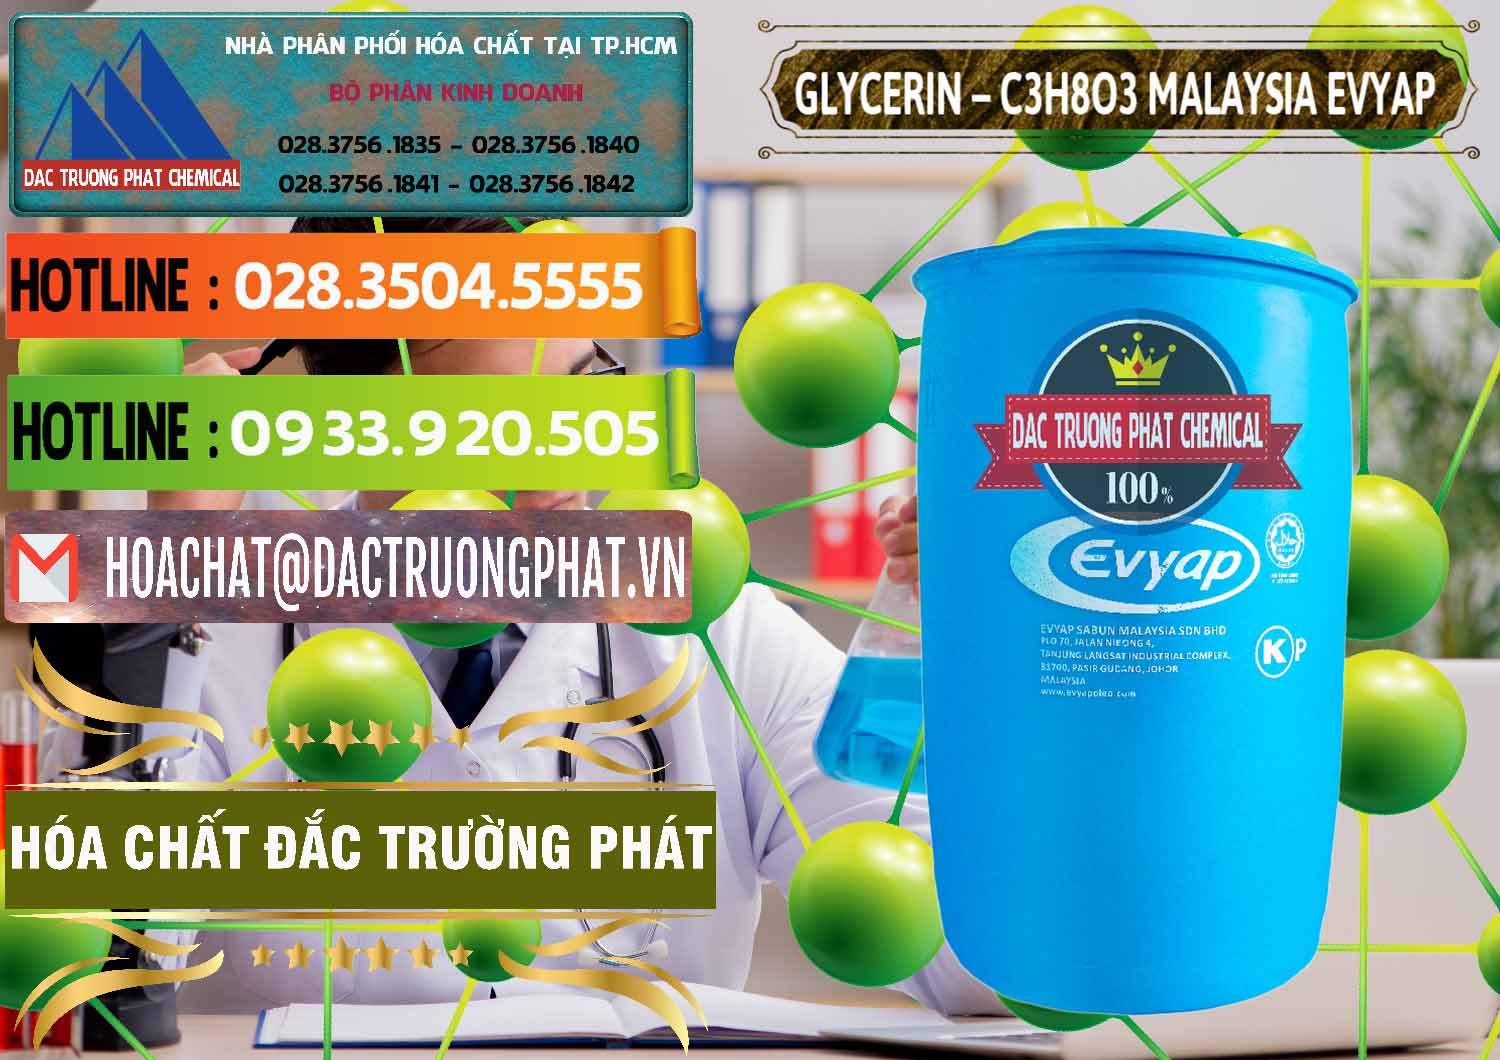 Cty kinh doanh & bán Glycerin – C3H8O3 Malaysia Evyap - 0066 - Cty chuyên kinh doanh & cung cấp hóa chất tại TP.HCM - cungcaphoachat.com.vn